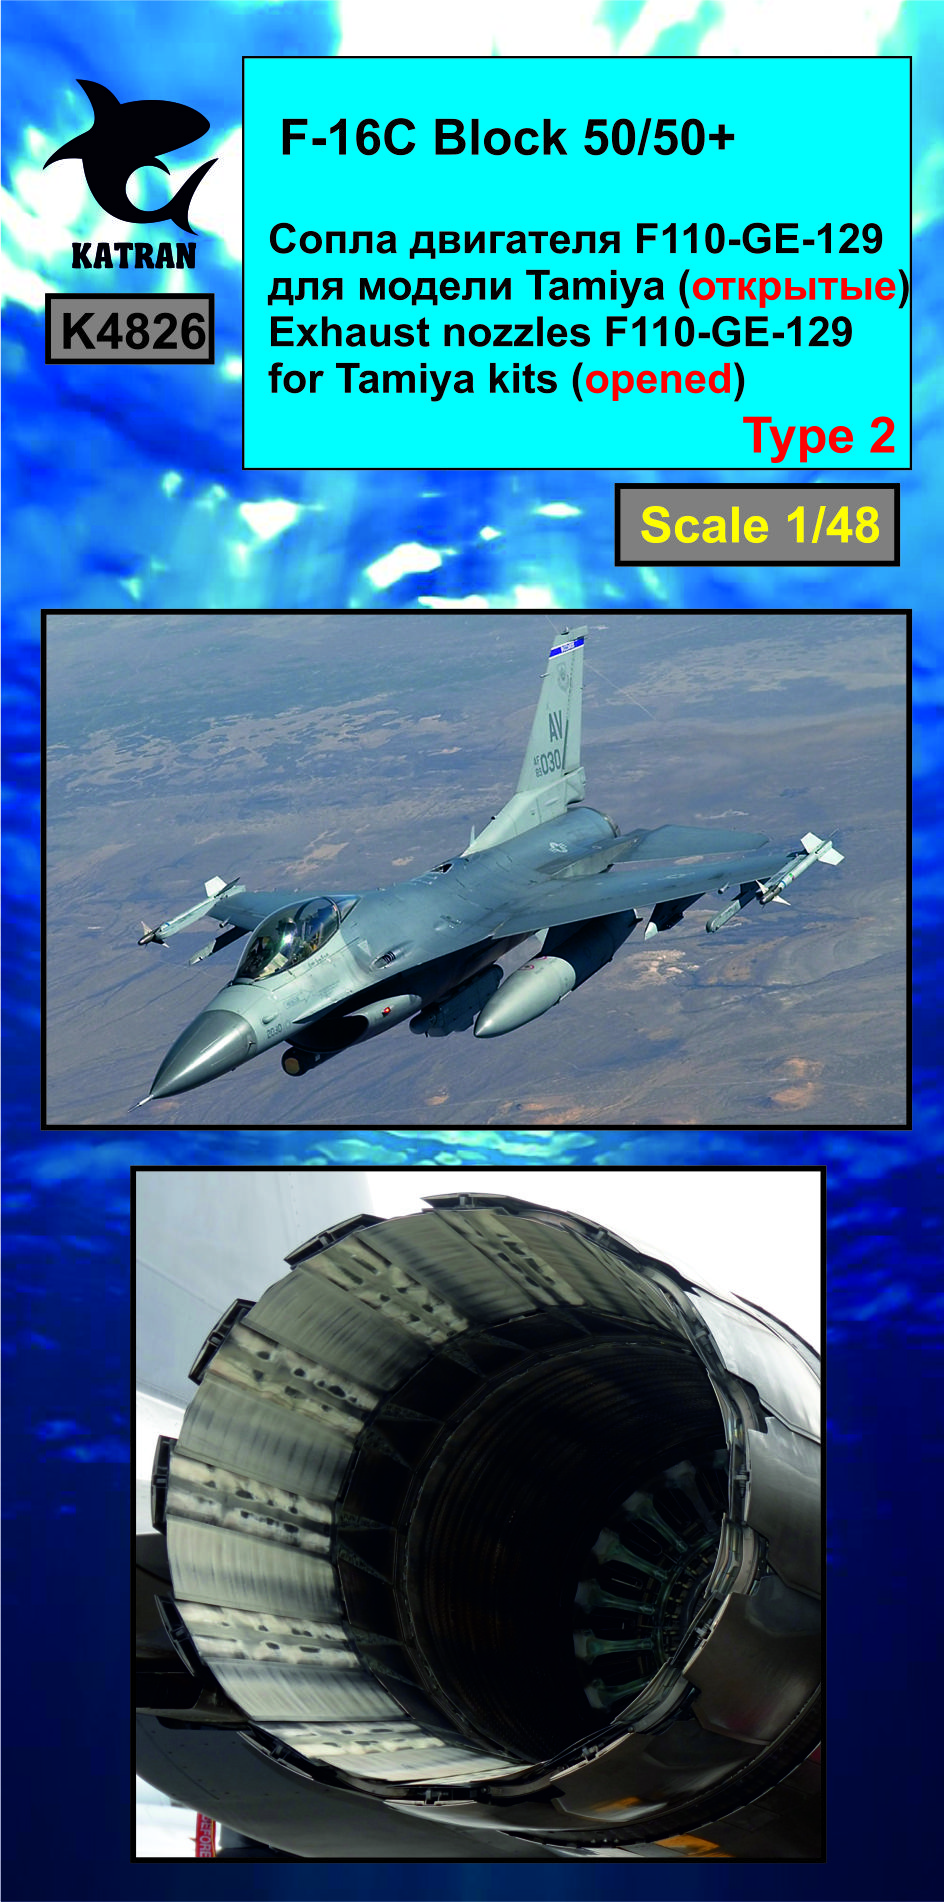 Дополнения из смолы 1/48 F-16C Block 50/50+ Viper сопла двигателя F-110-GE-129 (opened) (Katran) 